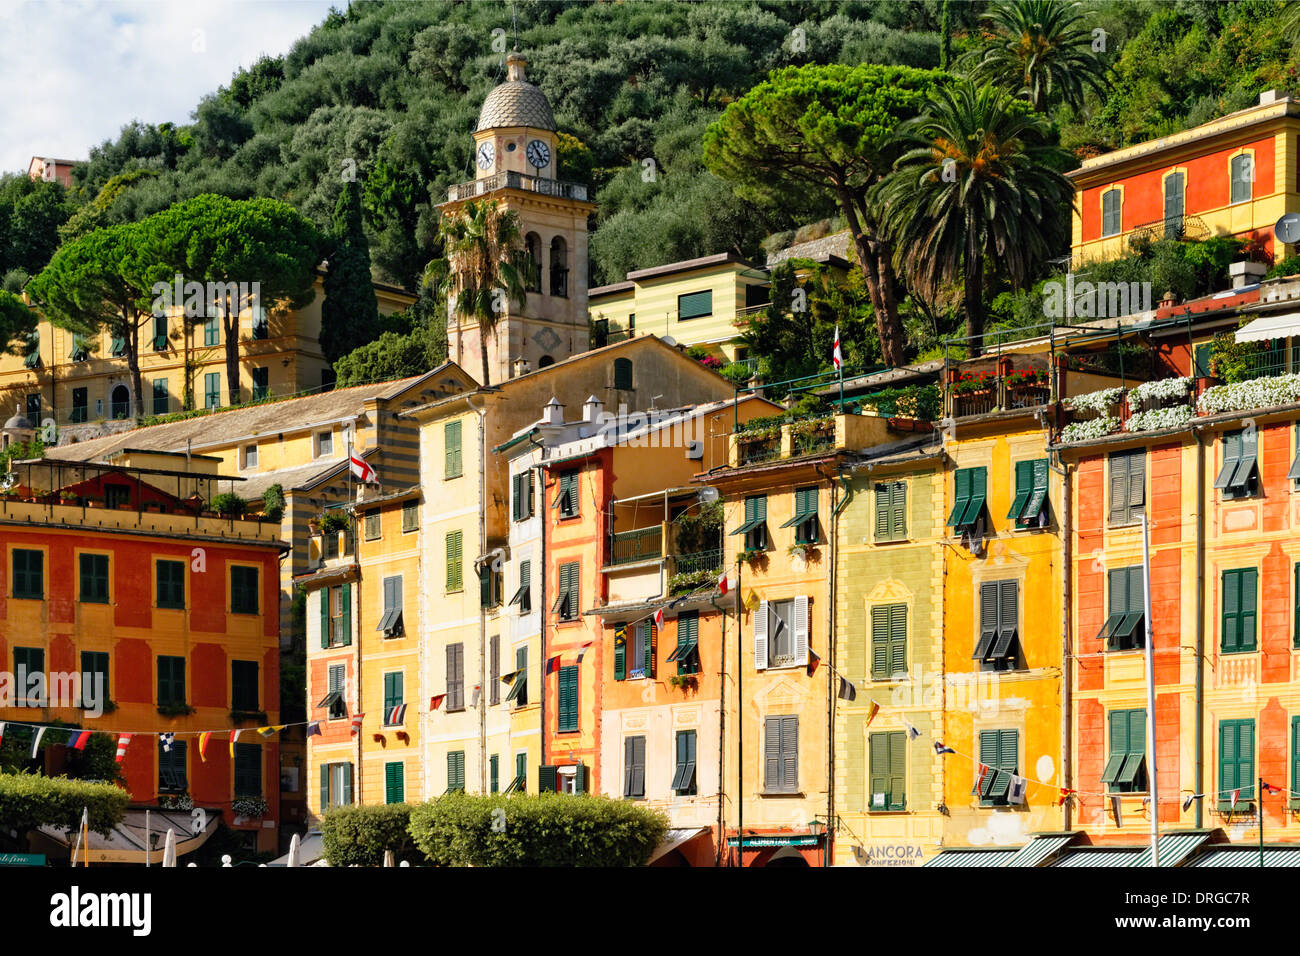 Vue rapprochée de façades colorées et d'un clocher, Portofino, ligurie, italie Banque D'Images